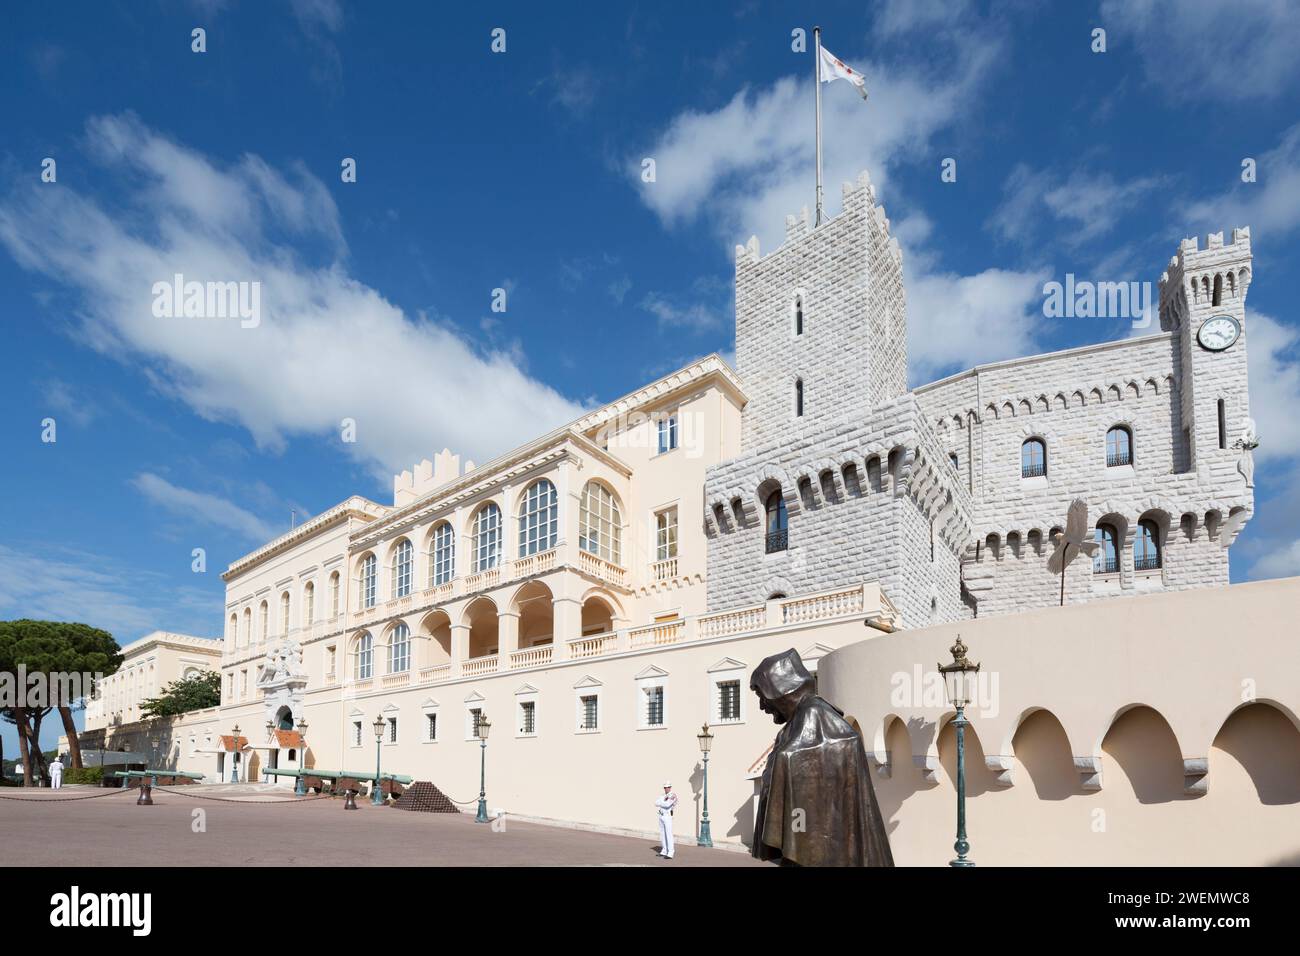 Monaco, des Prinzen Palast der Familie Grimaldi seit 1297. Die offizielle Residenz der Fürsten von Monaco. Stockfoto